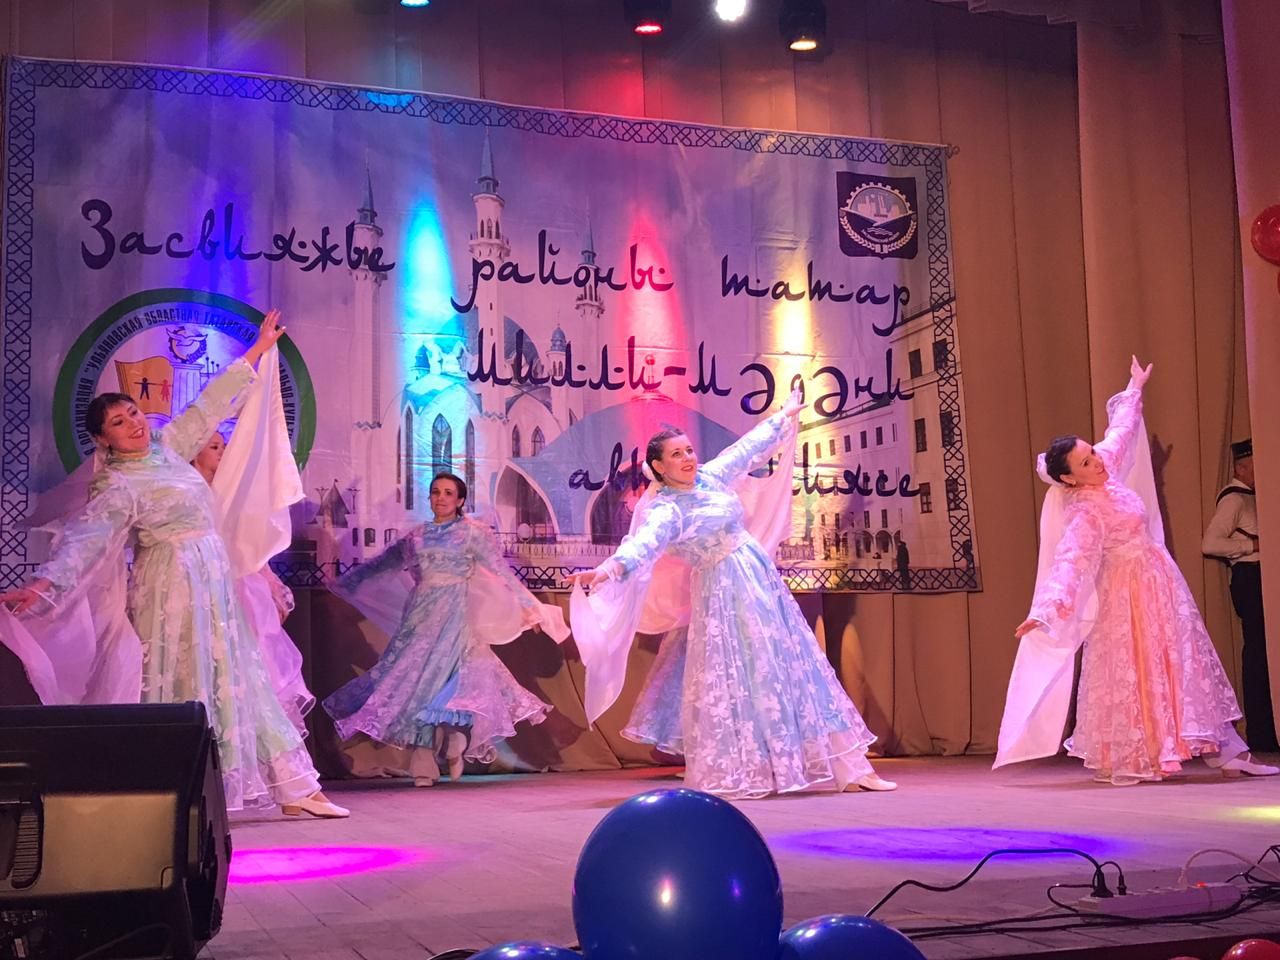 Дрожжановцы выступили на Дне Татарского языка и культуры в Ульяновске